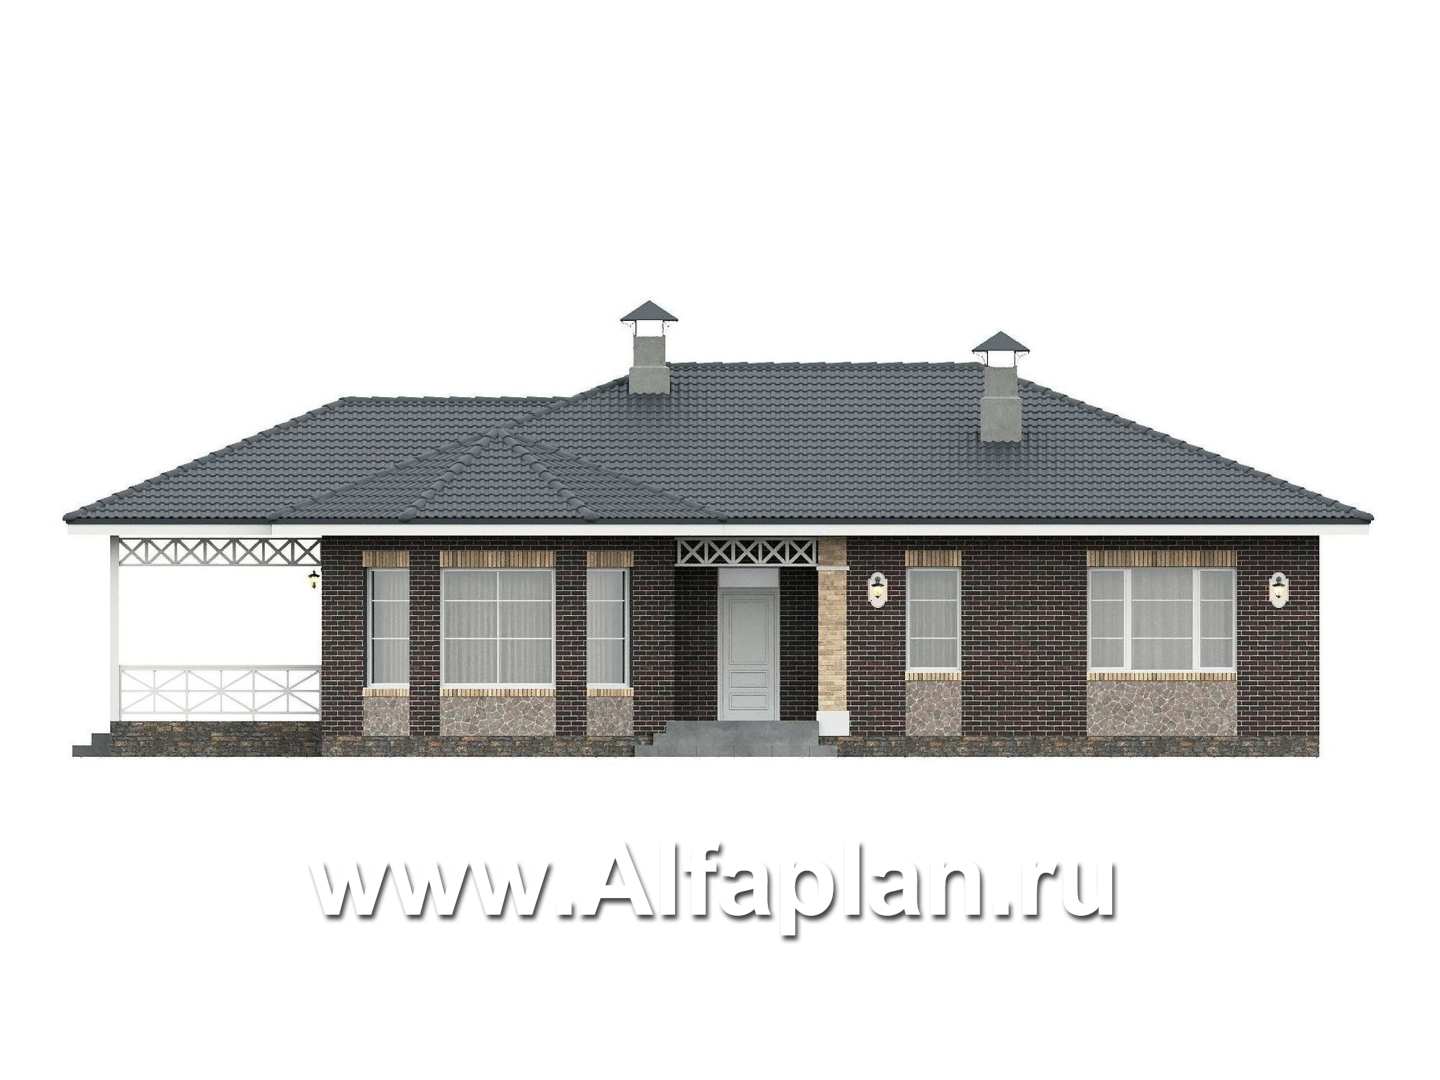 «Розенхайм» - проект одноэтажного дома в баварском стиле, планировка гостиная с эркером, кабинет и 2 спальни, с террасой - фасад дома